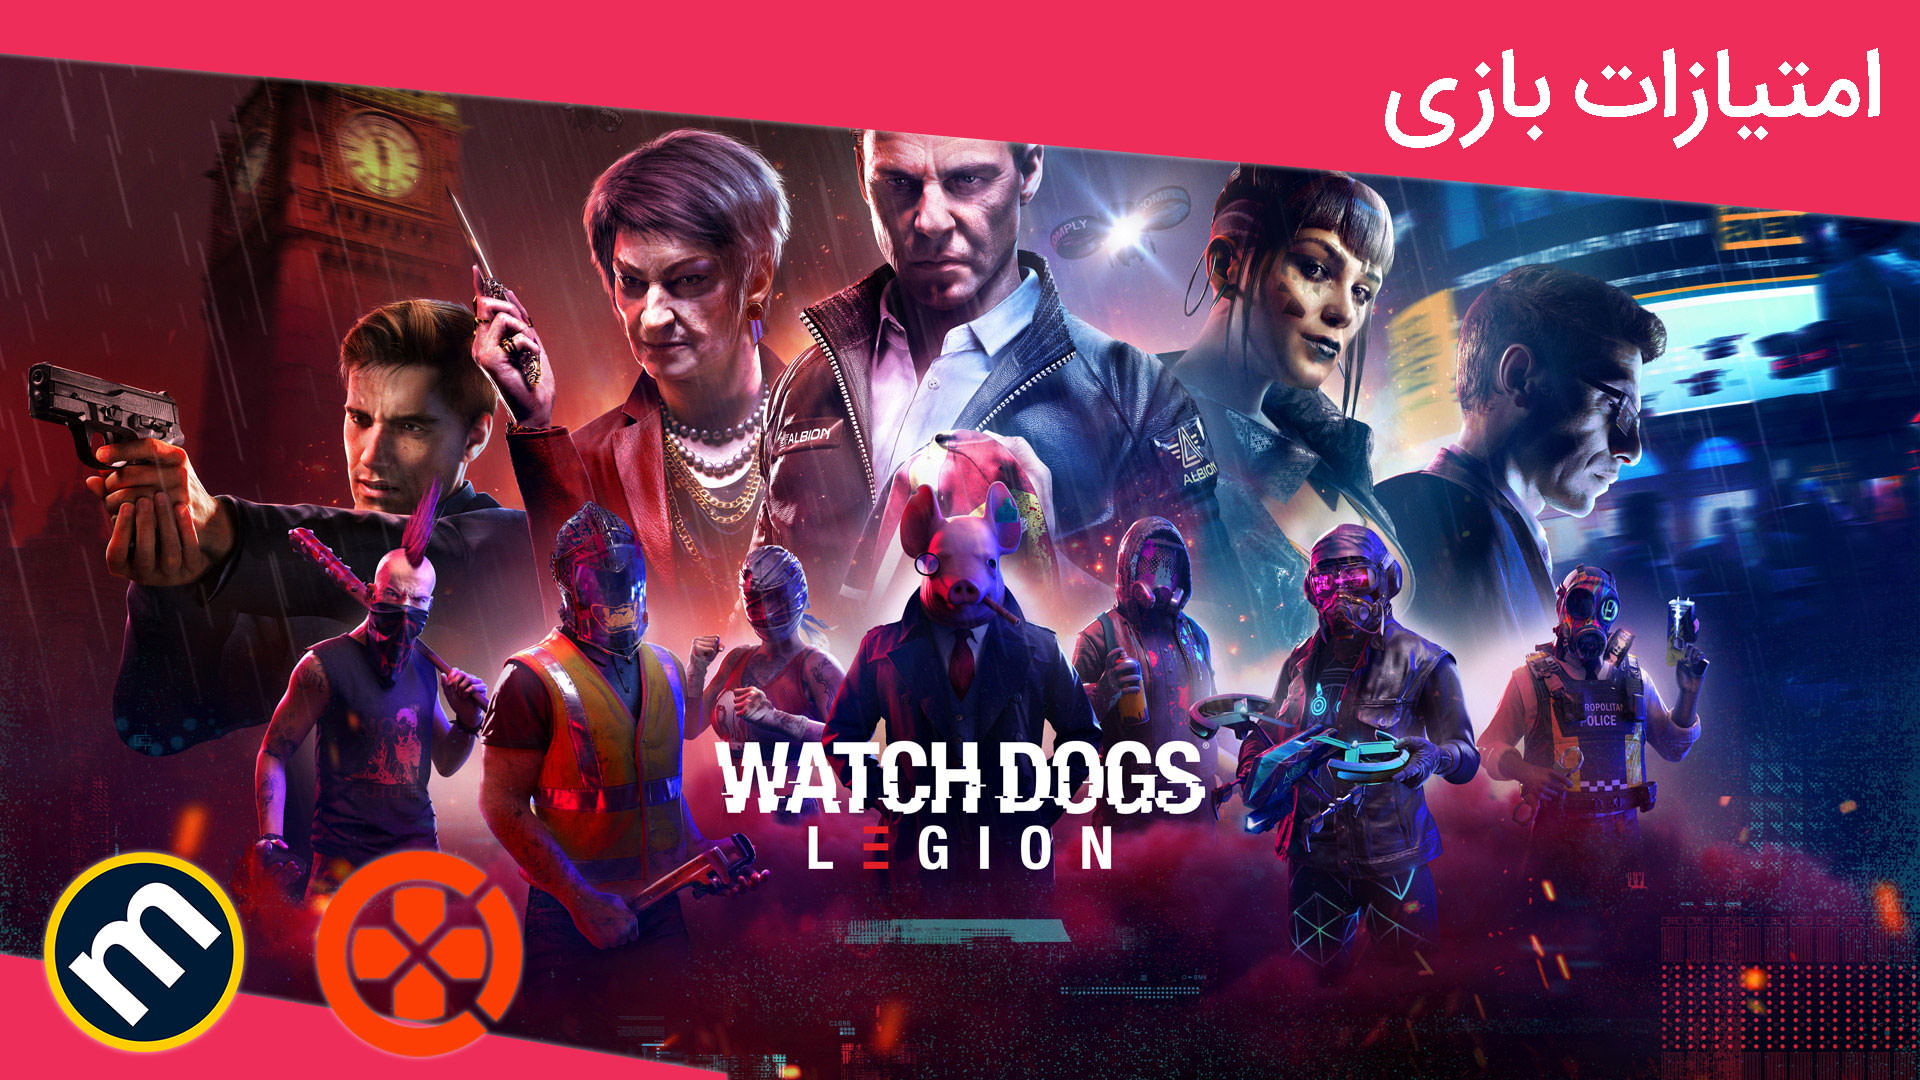  بررسی بازی Watch Dogs Legion از دید سایت‌های معتبر دنیا